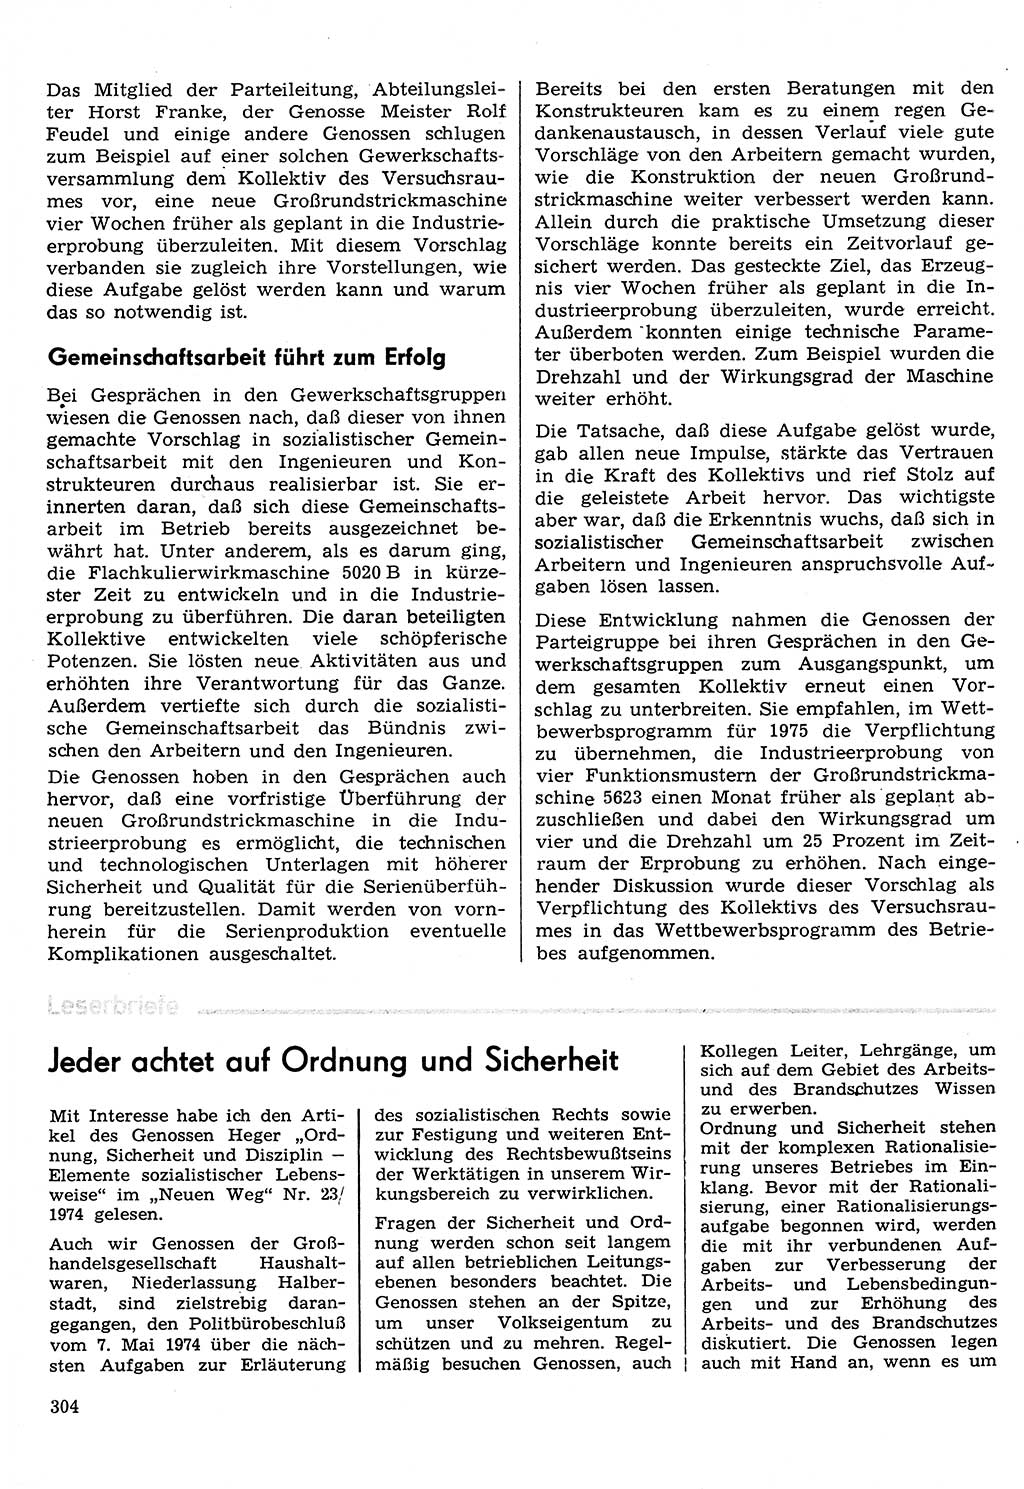 Neuer Weg (NW), Organ des Zentralkomitees (ZK) der SED (Sozialistische Einheitspartei Deutschlands) für Fragen des Parteilebens, 30. Jahrgang [Deutsche Demokratische Republik (DDR)] 1975, Seite 304 (NW ZK SED DDR 1975, S. 304)